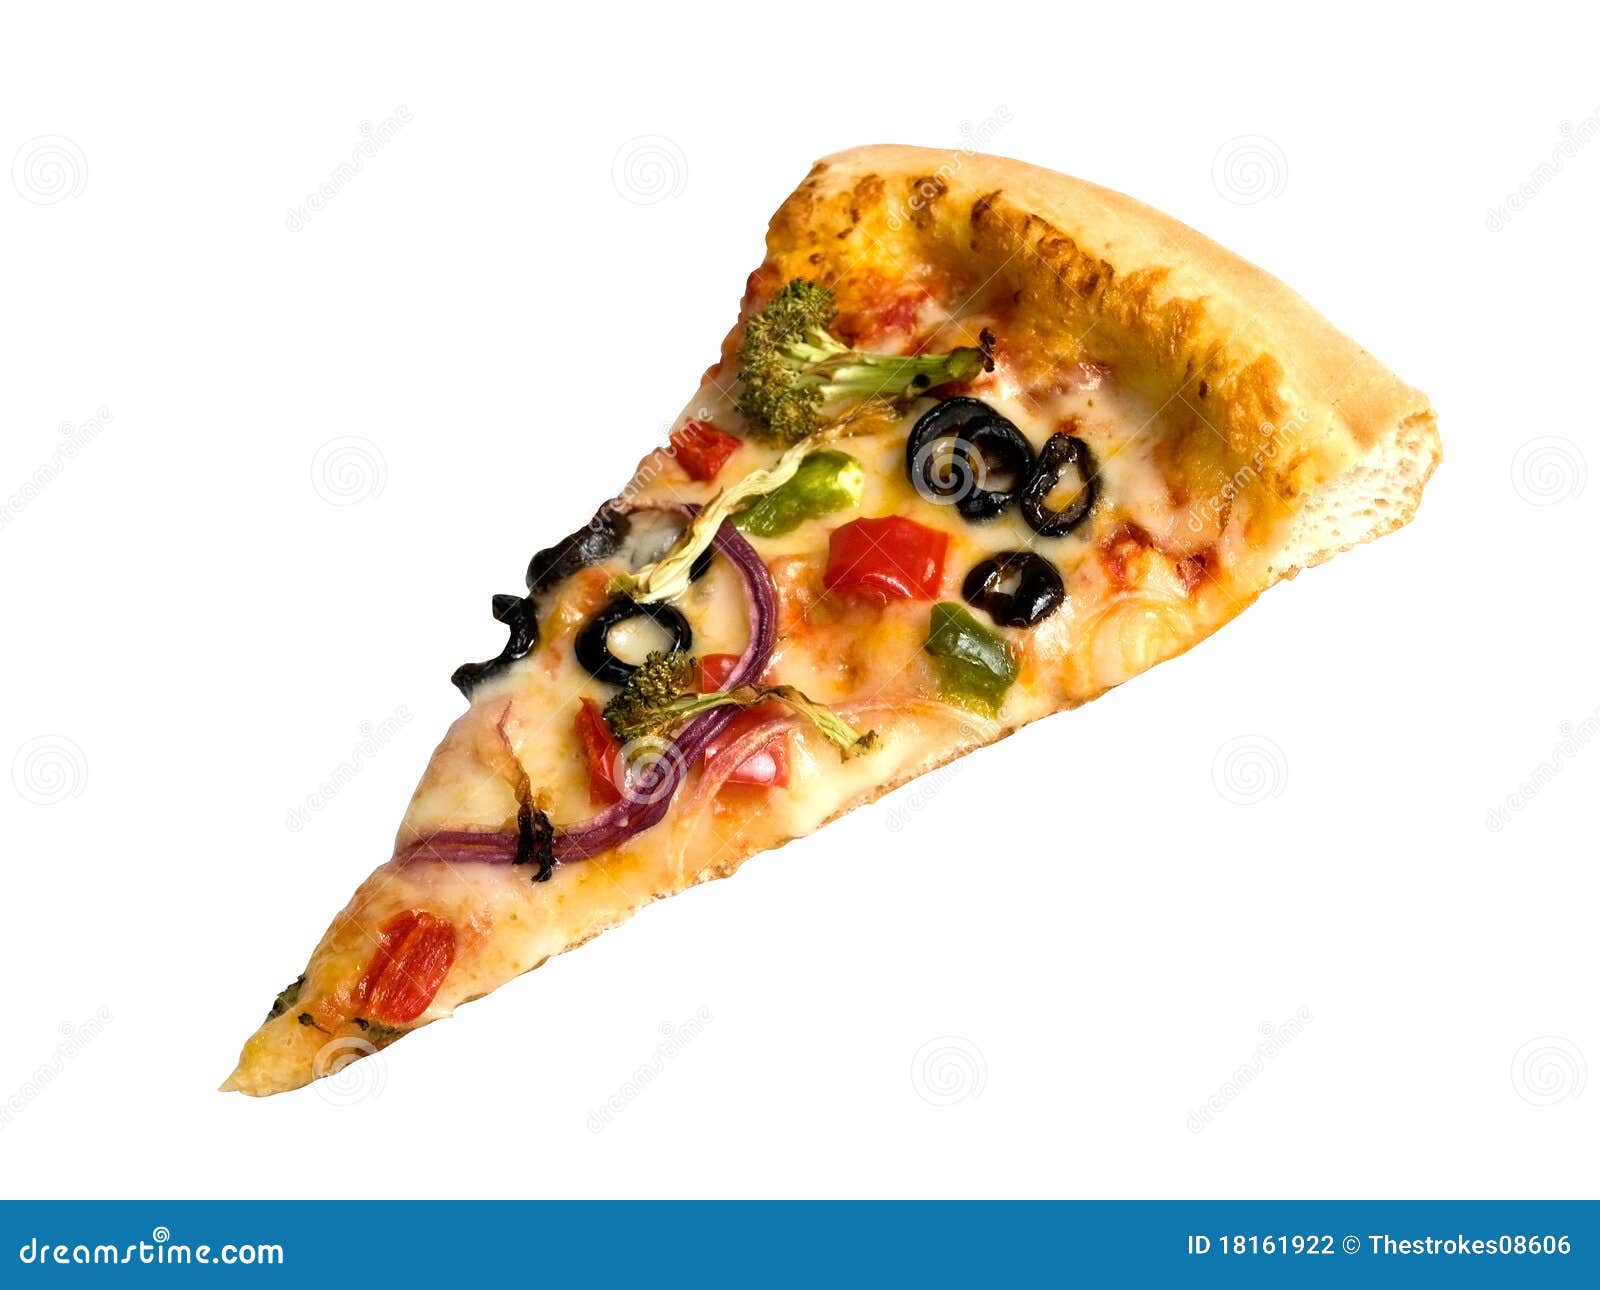 фотошоп кусок пиццы фото 79